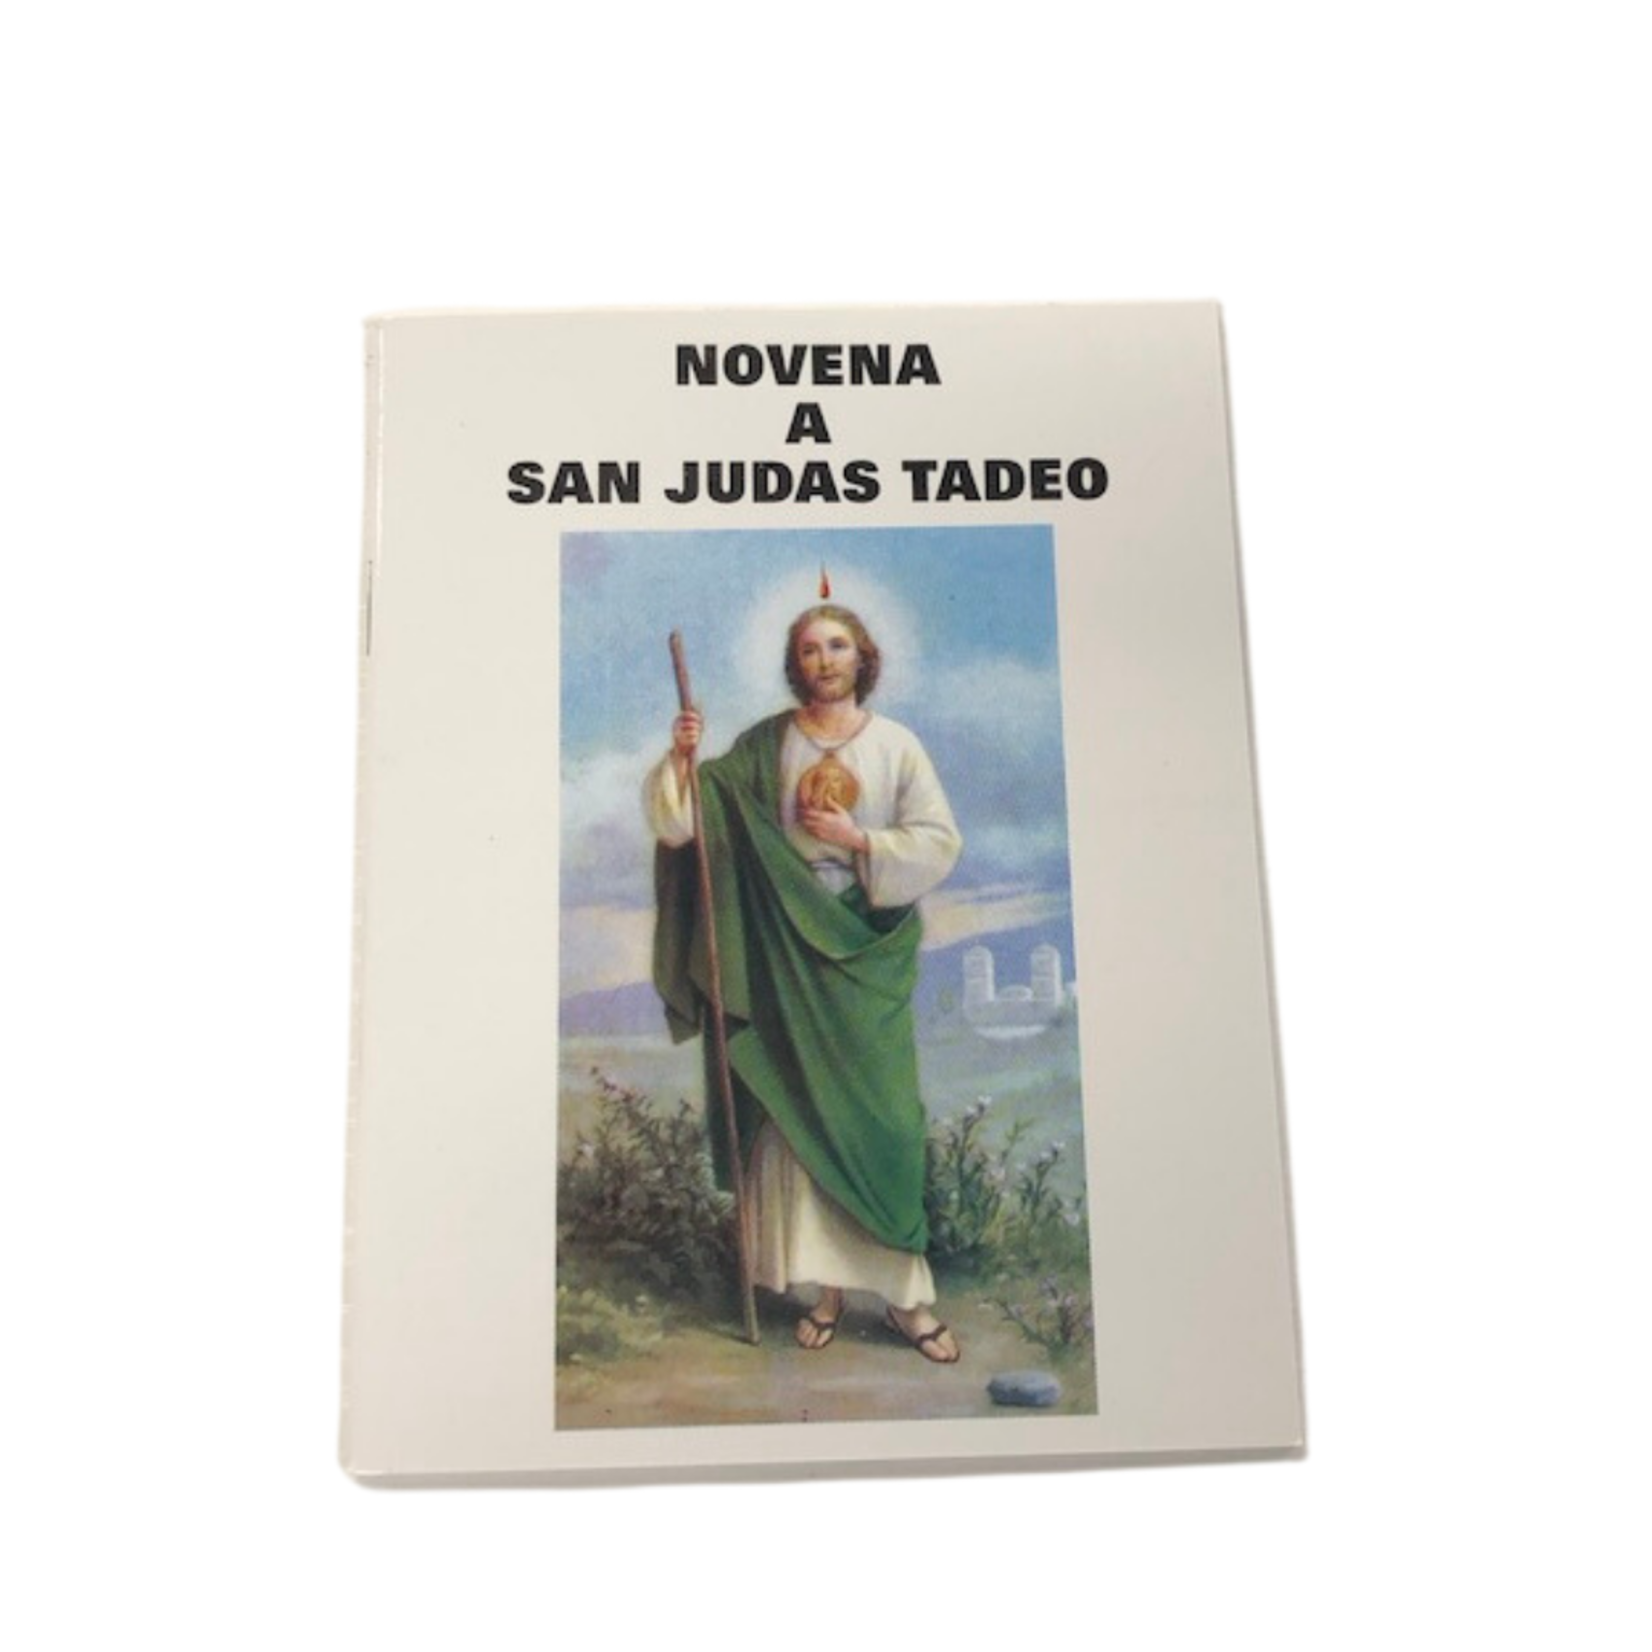 San Judas Tadeo Libro - St. Paul's Catholic Books & Gifts